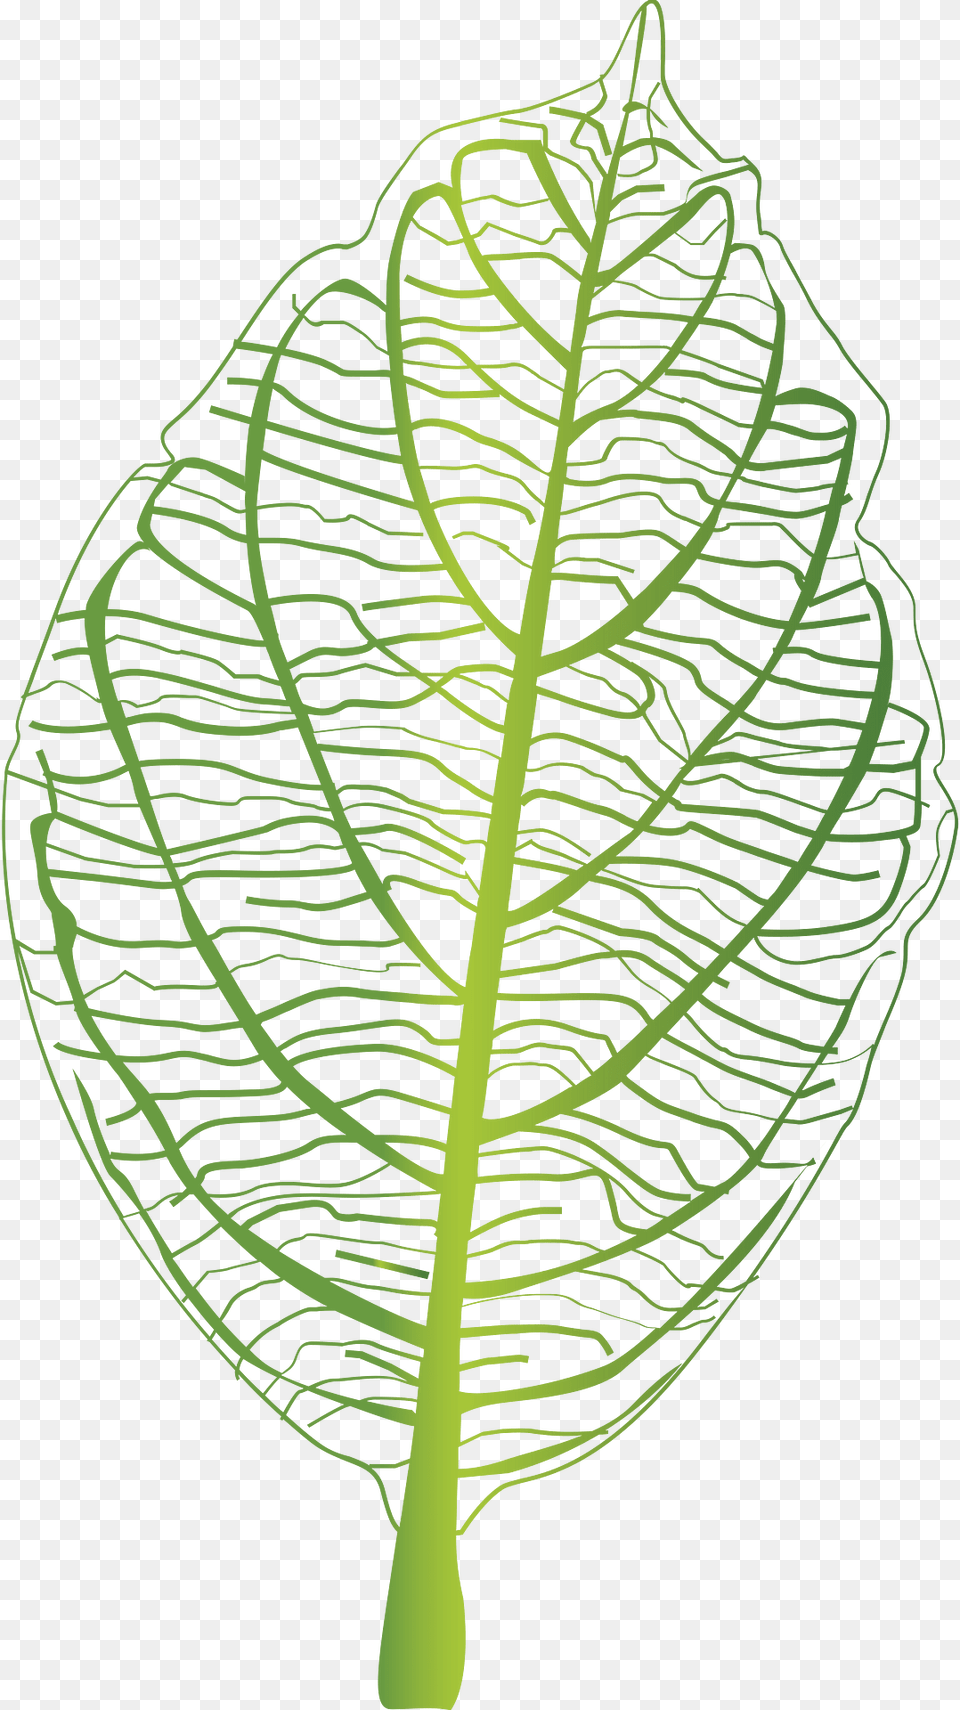 Green Leaf Clipart, Plant, Vegetation Free Transparent Png